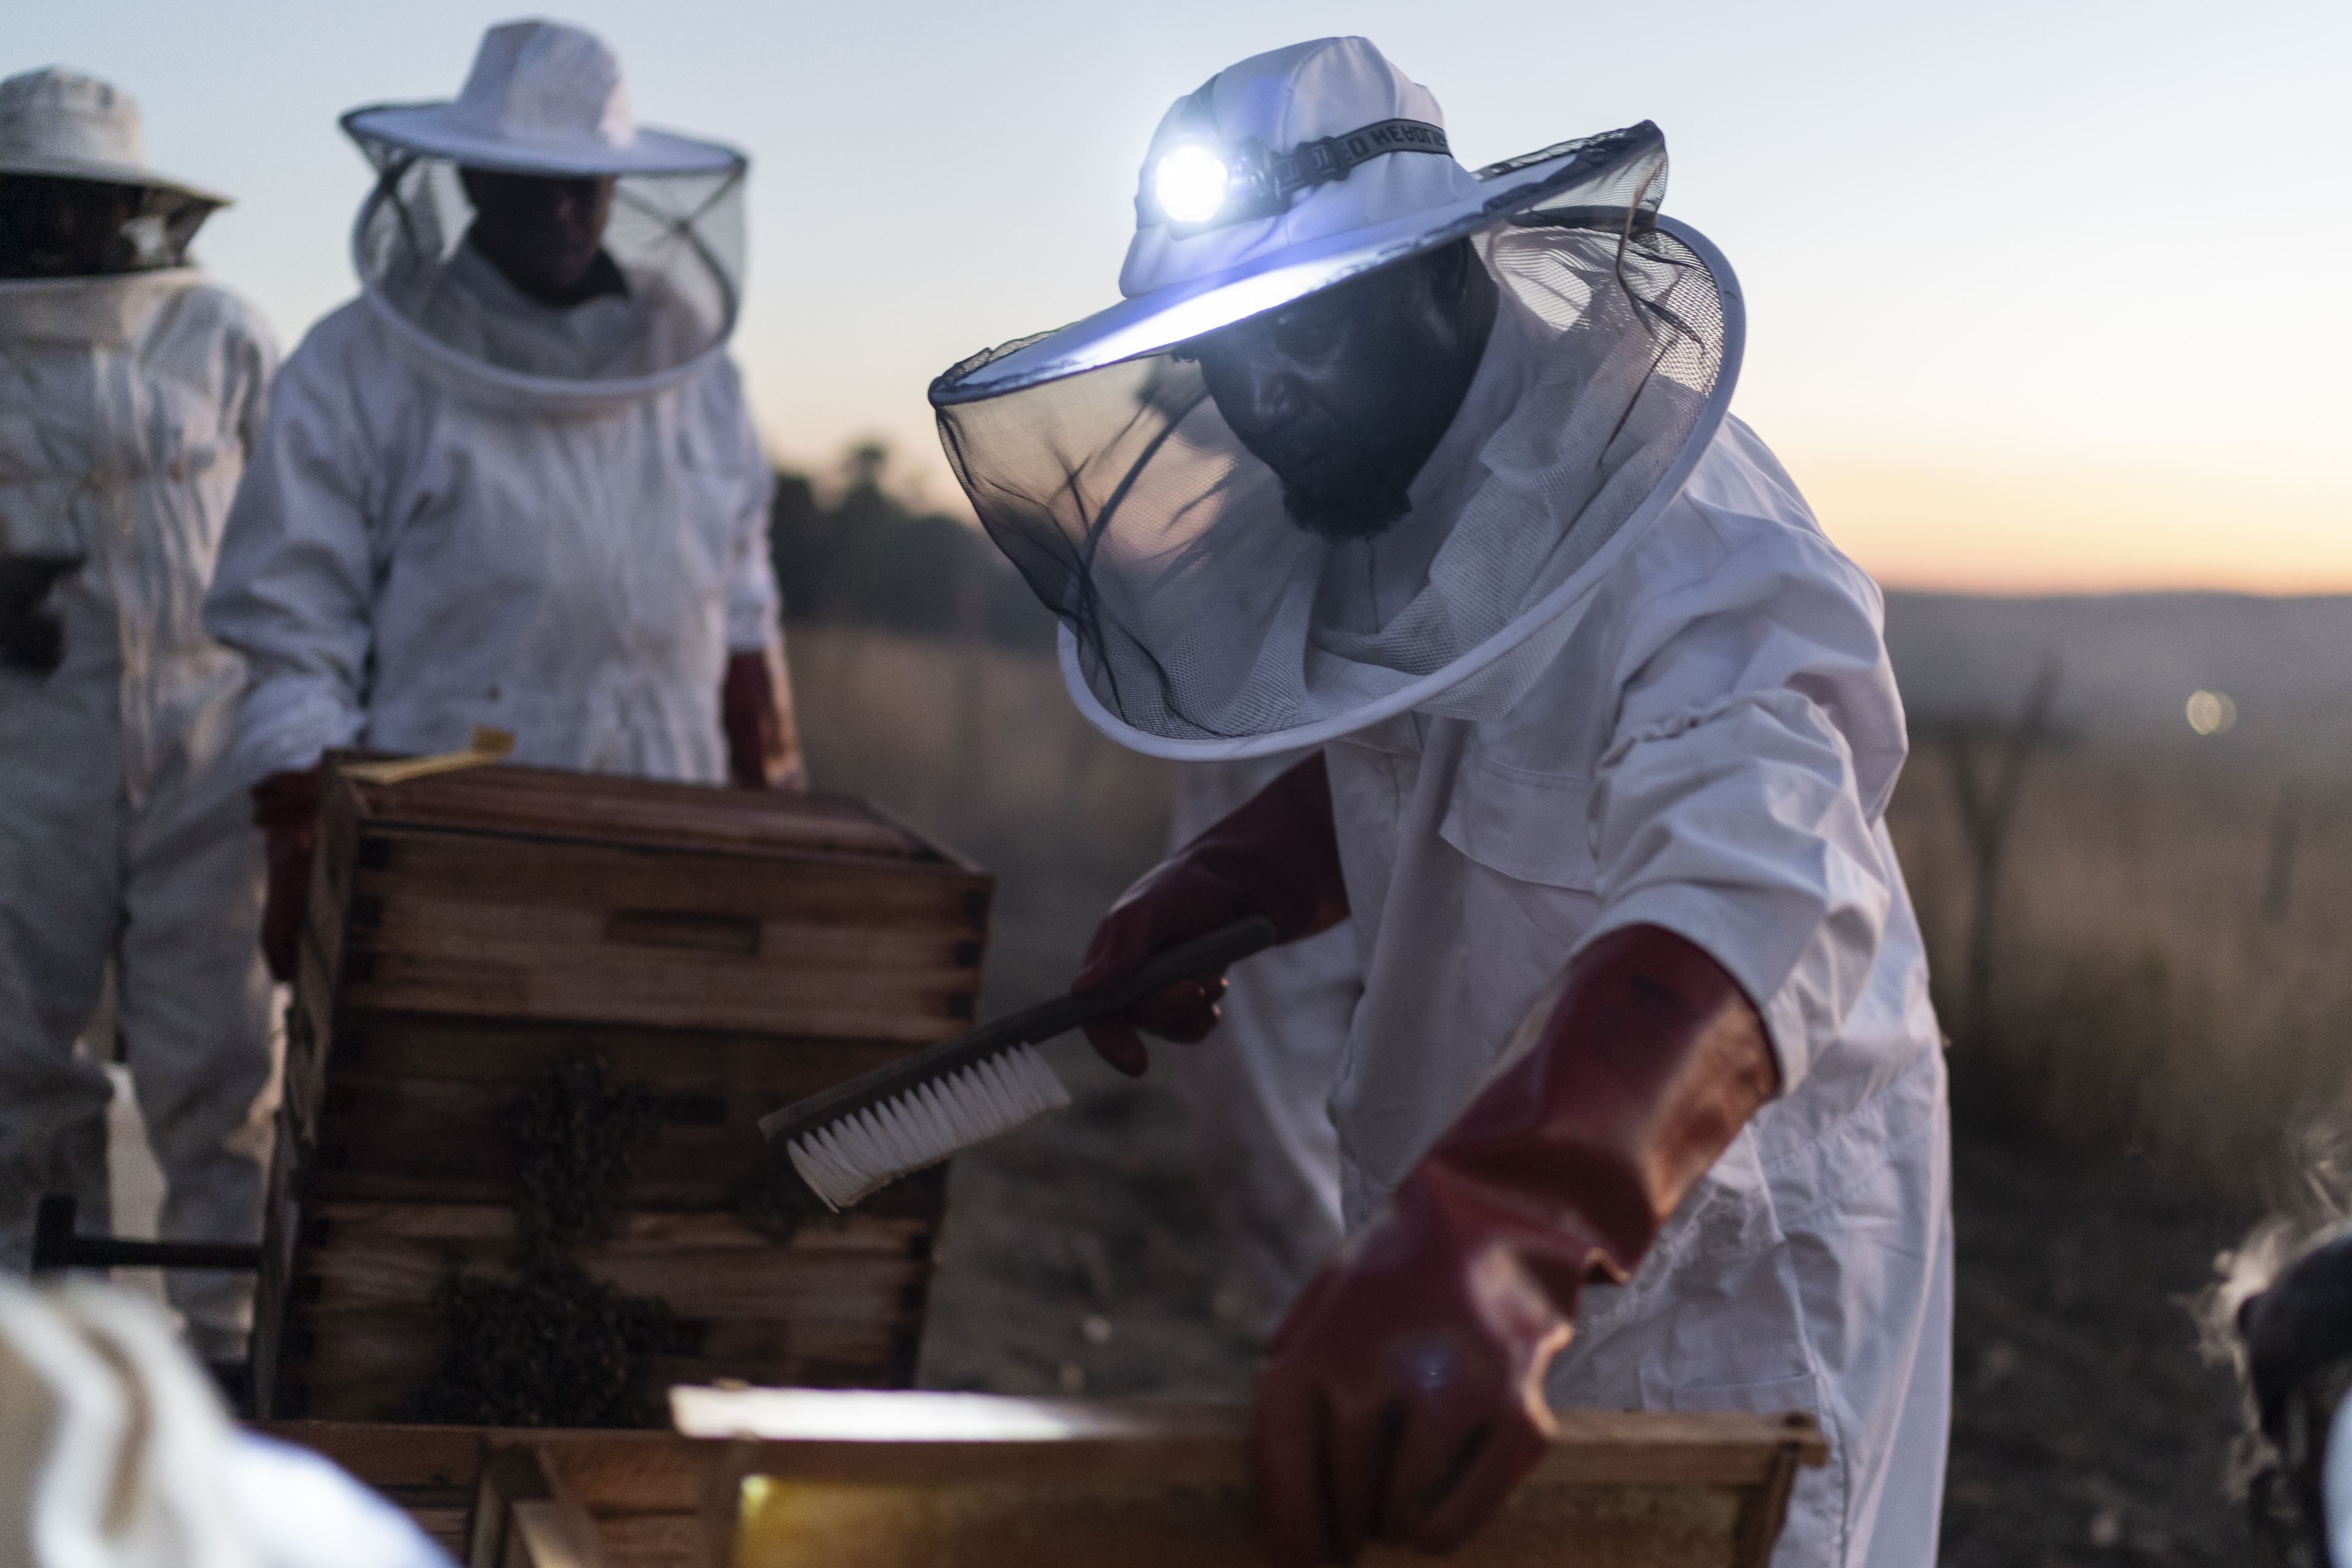 Los miembros de un grupo de apicultores en Eswatini (Swazilandia) se amontonan alrededor de una colmena, y un miembro se acerca para extraer las primeras colmenas que se proporcionaron para ayudar a diversificar los ingresos familiares.